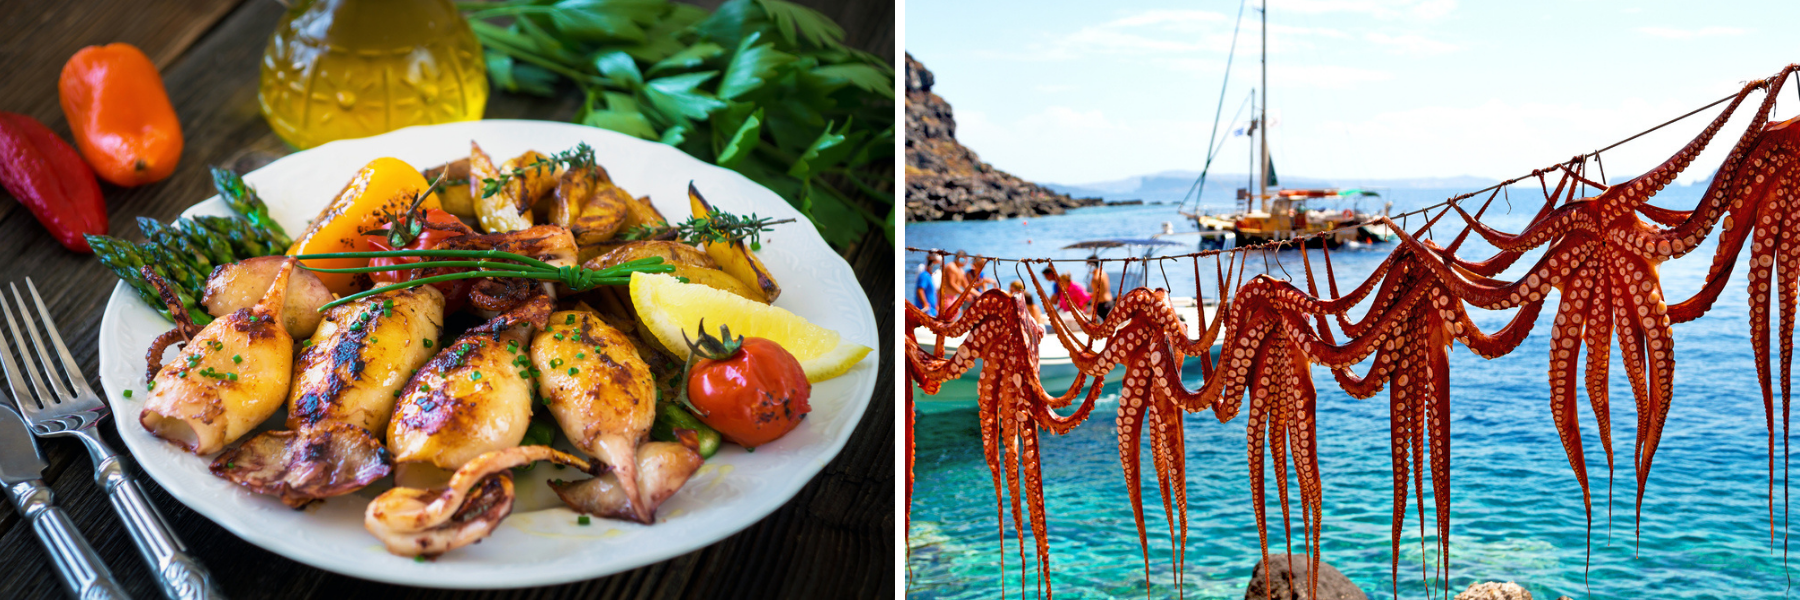 Sowohl in der kroatischen als auch in der griechischen Küche dominieren die Meeresfrüchte.